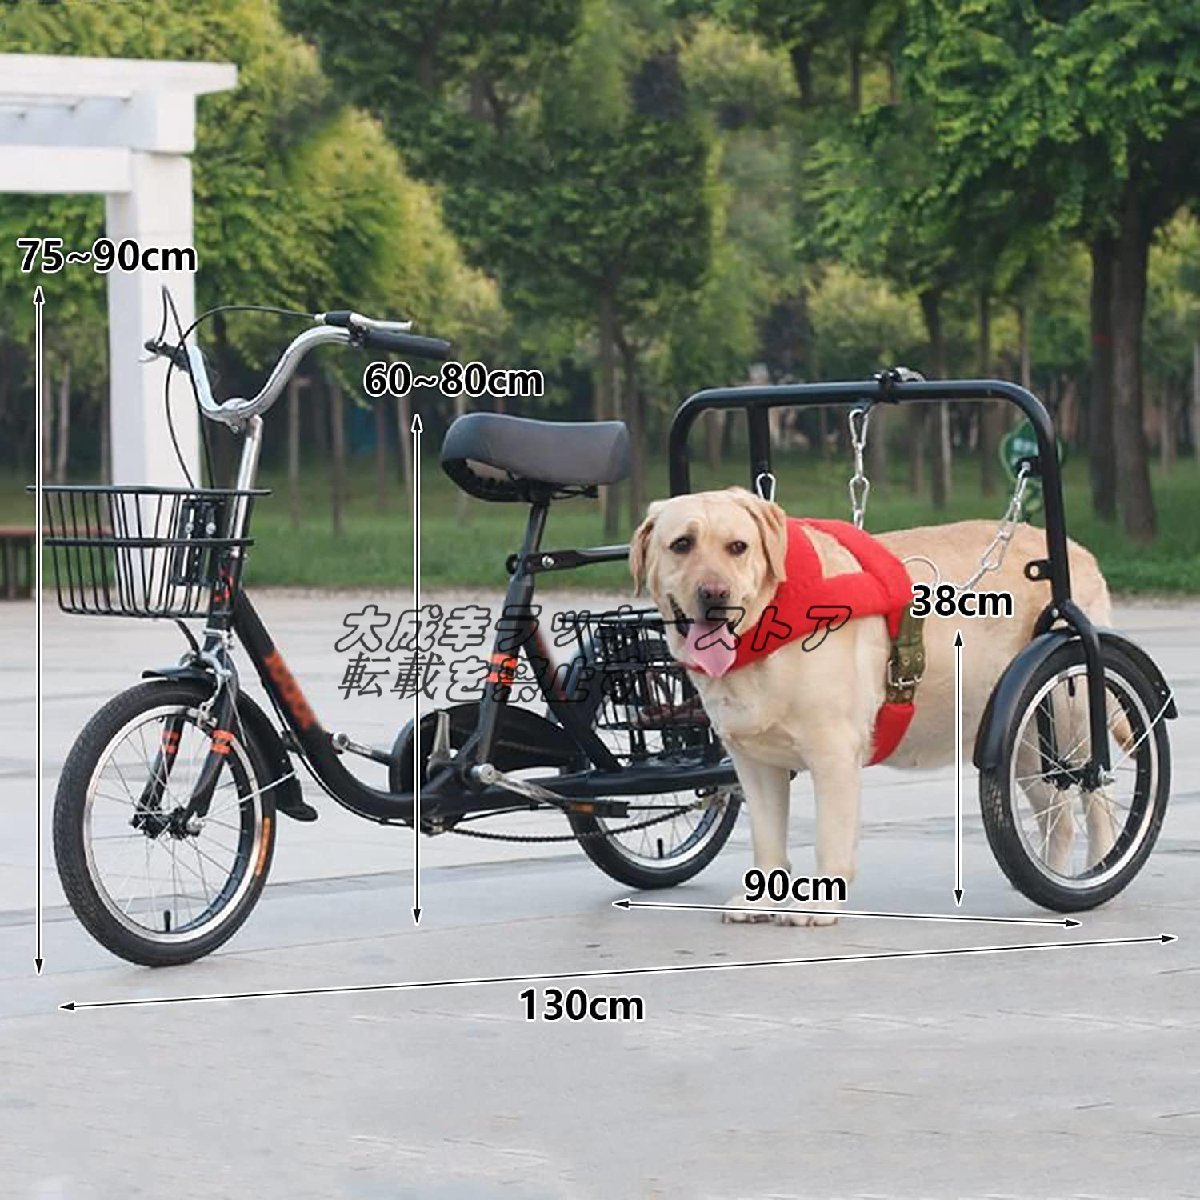 大好評☆折りたたみ式三輪自転車 中型および大型犬に適した犬の散歩